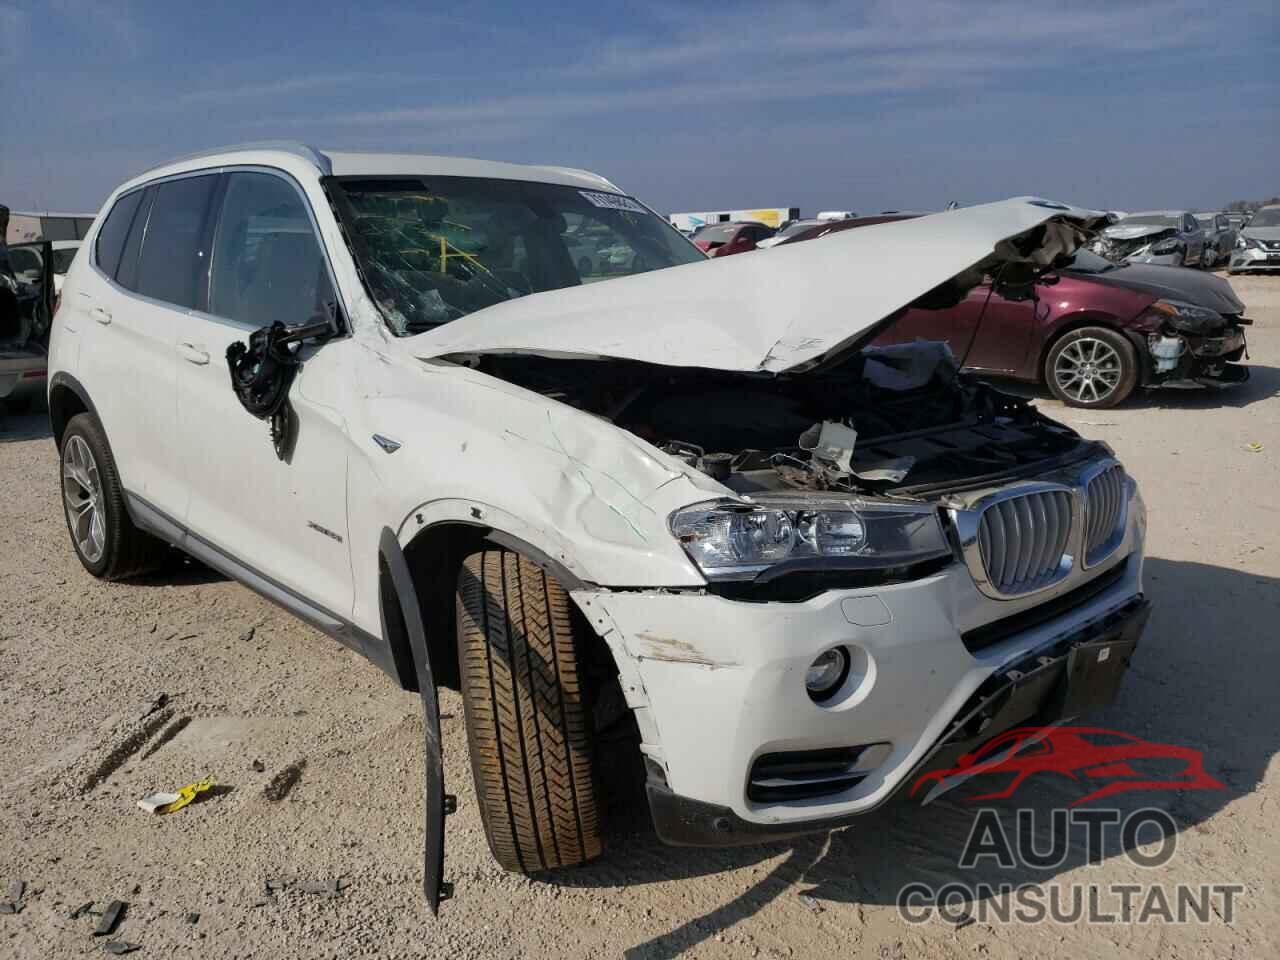 BMW X3 2016 - 5UXWX9C53G0D69285